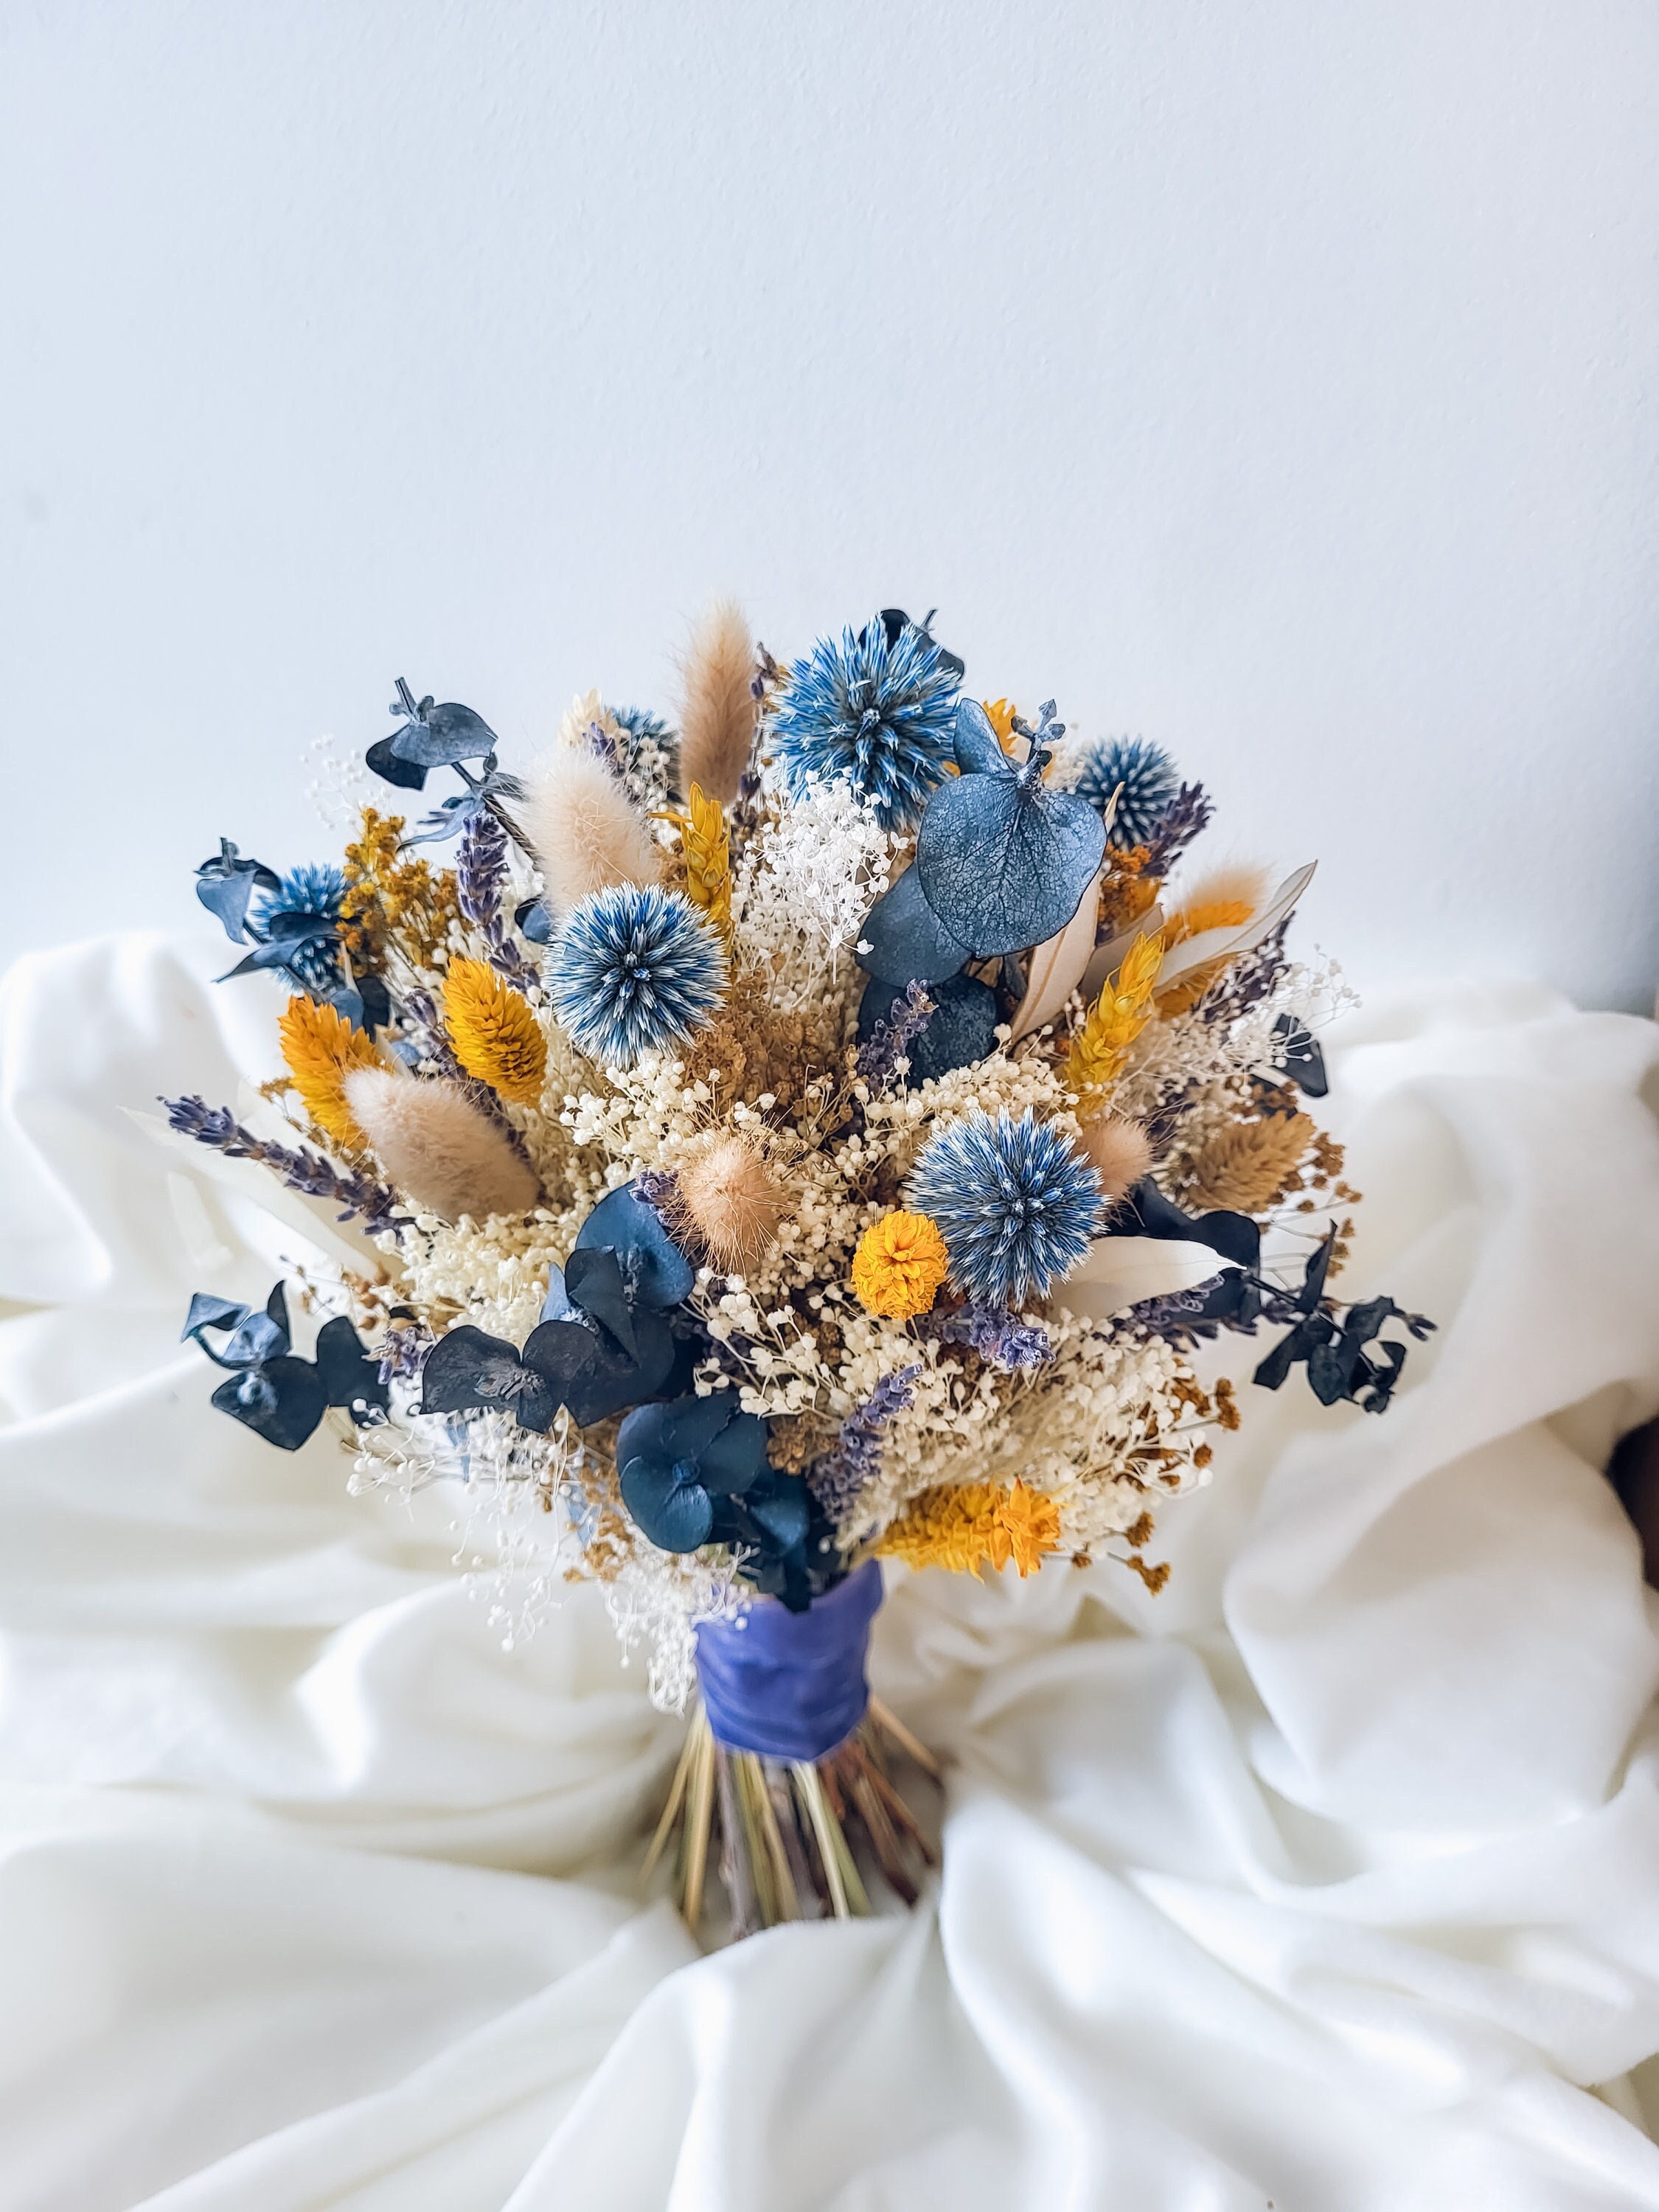 Dried Flowers Bouquet MARSEILLE, Blue Decorative Bouquet of